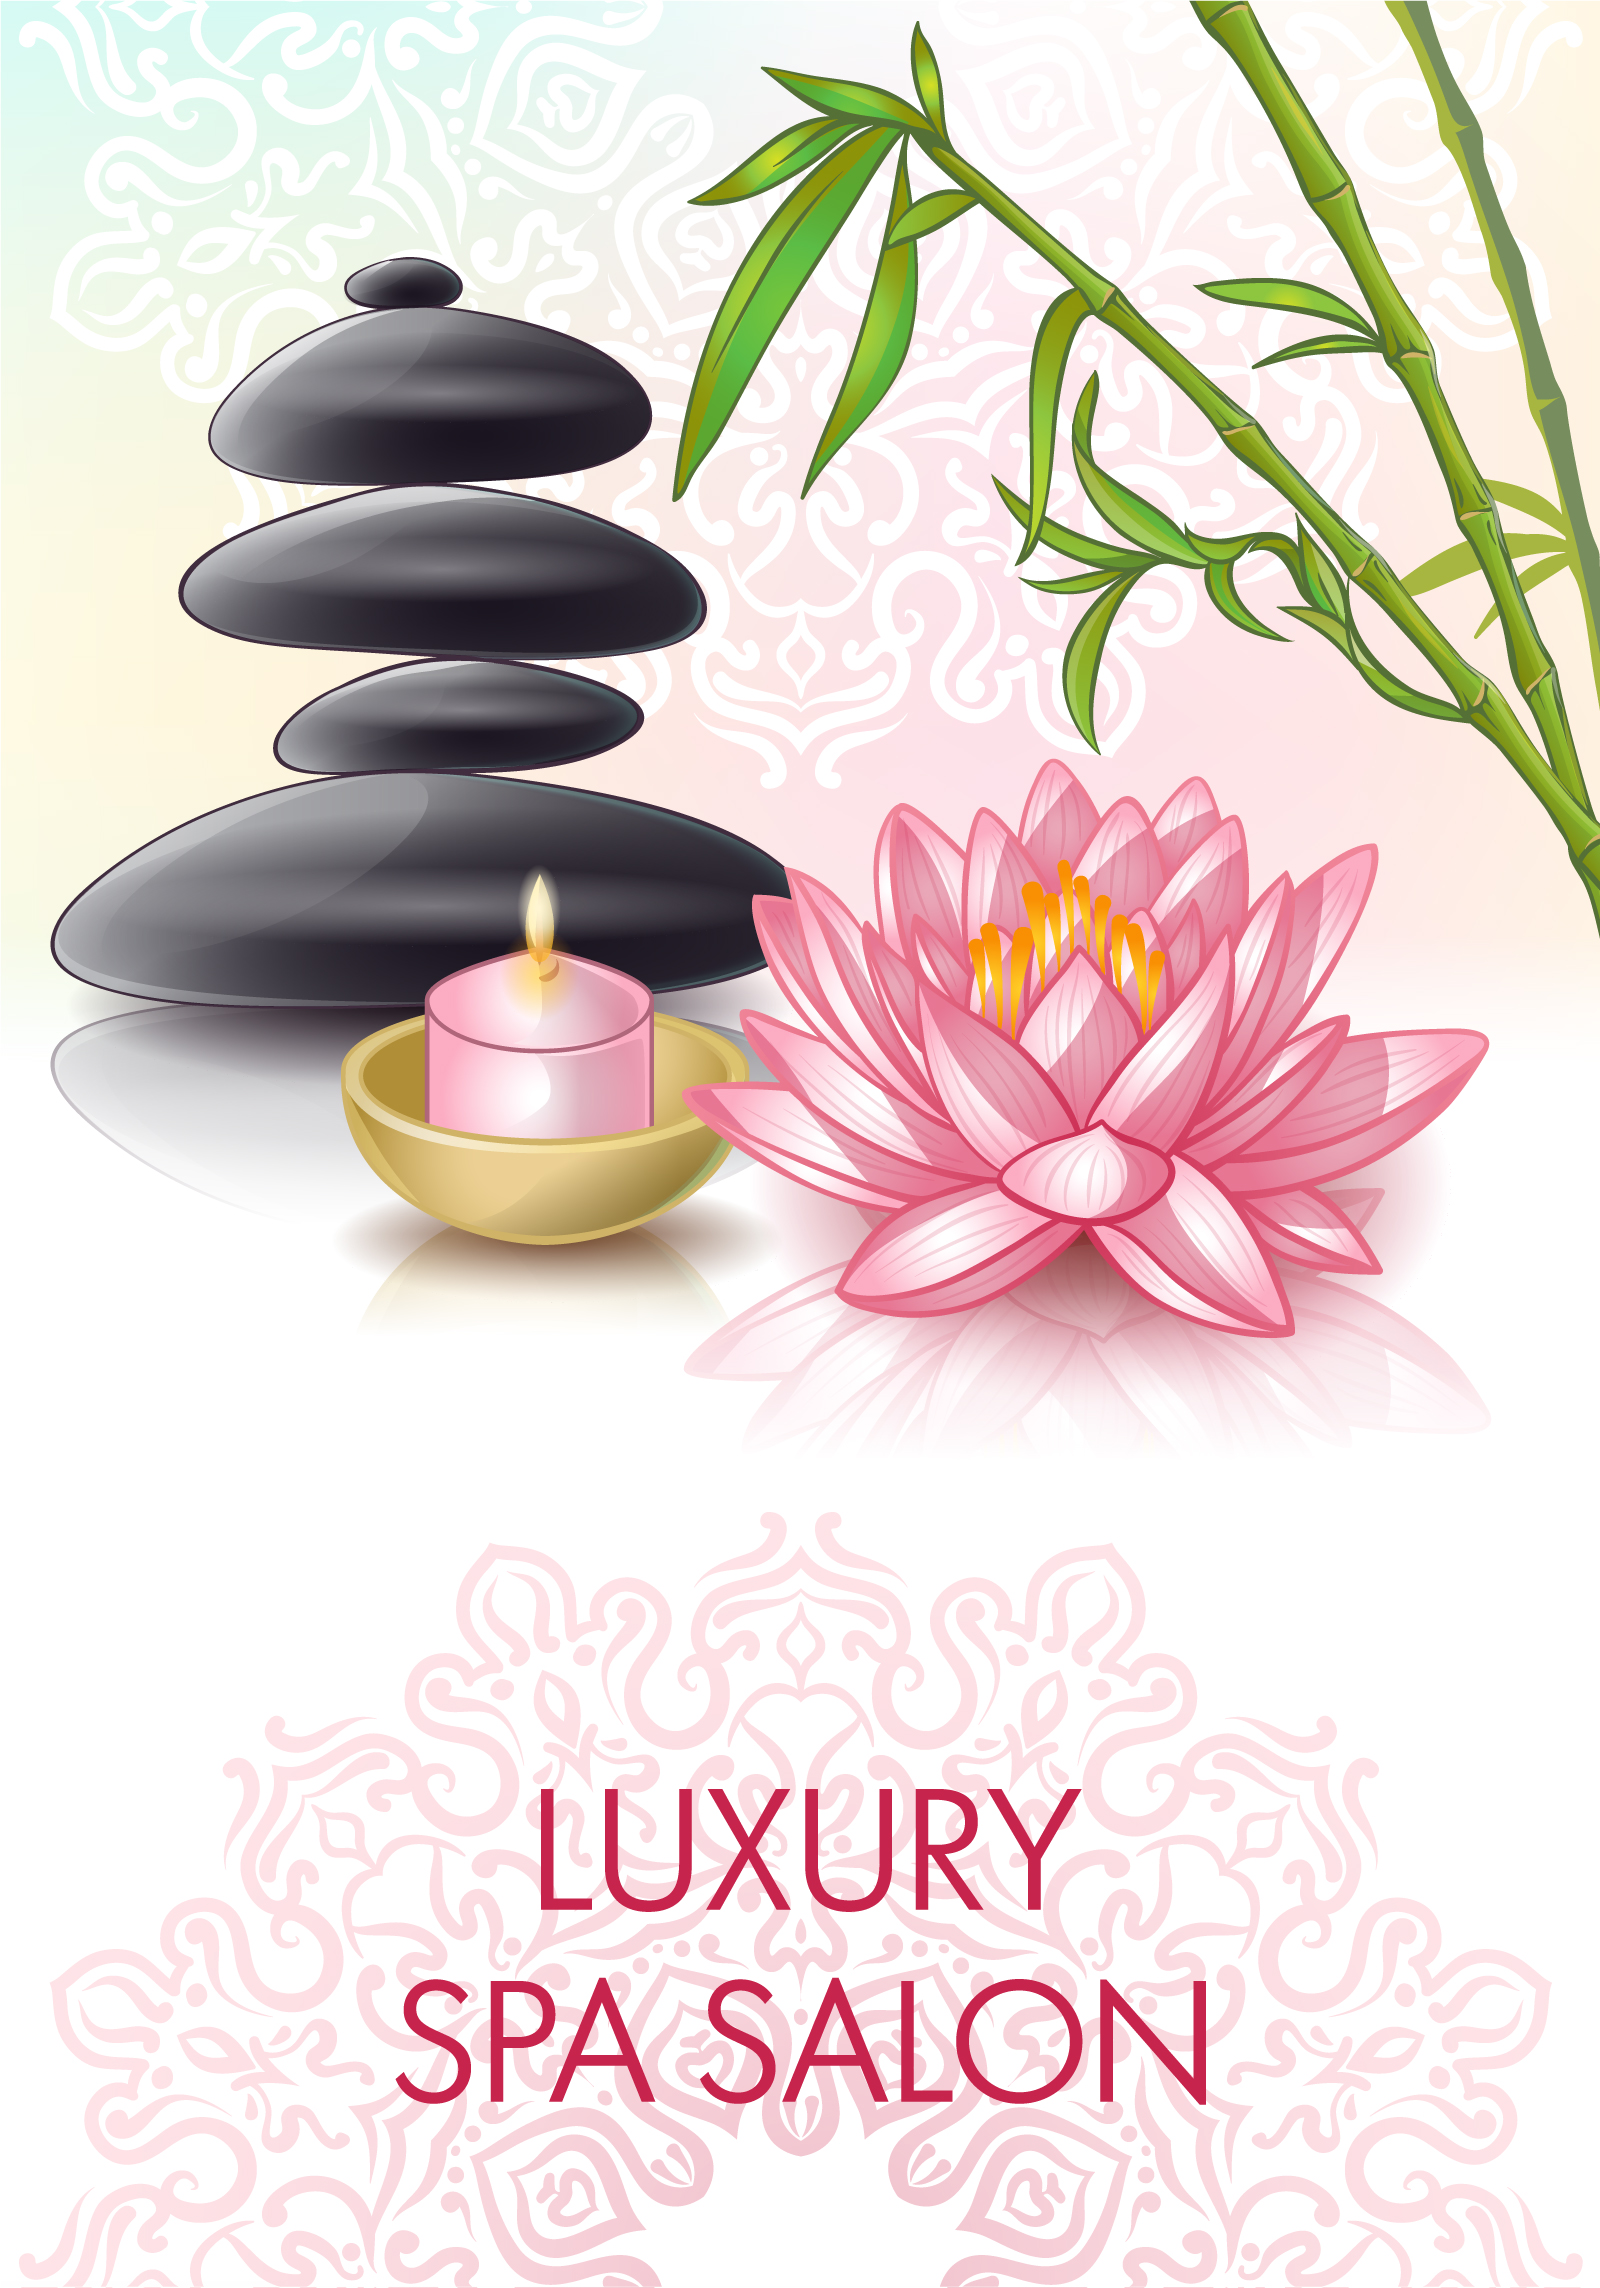 Pebbles, lotus, candles, bamboo Illustrations Vectors AI ESP